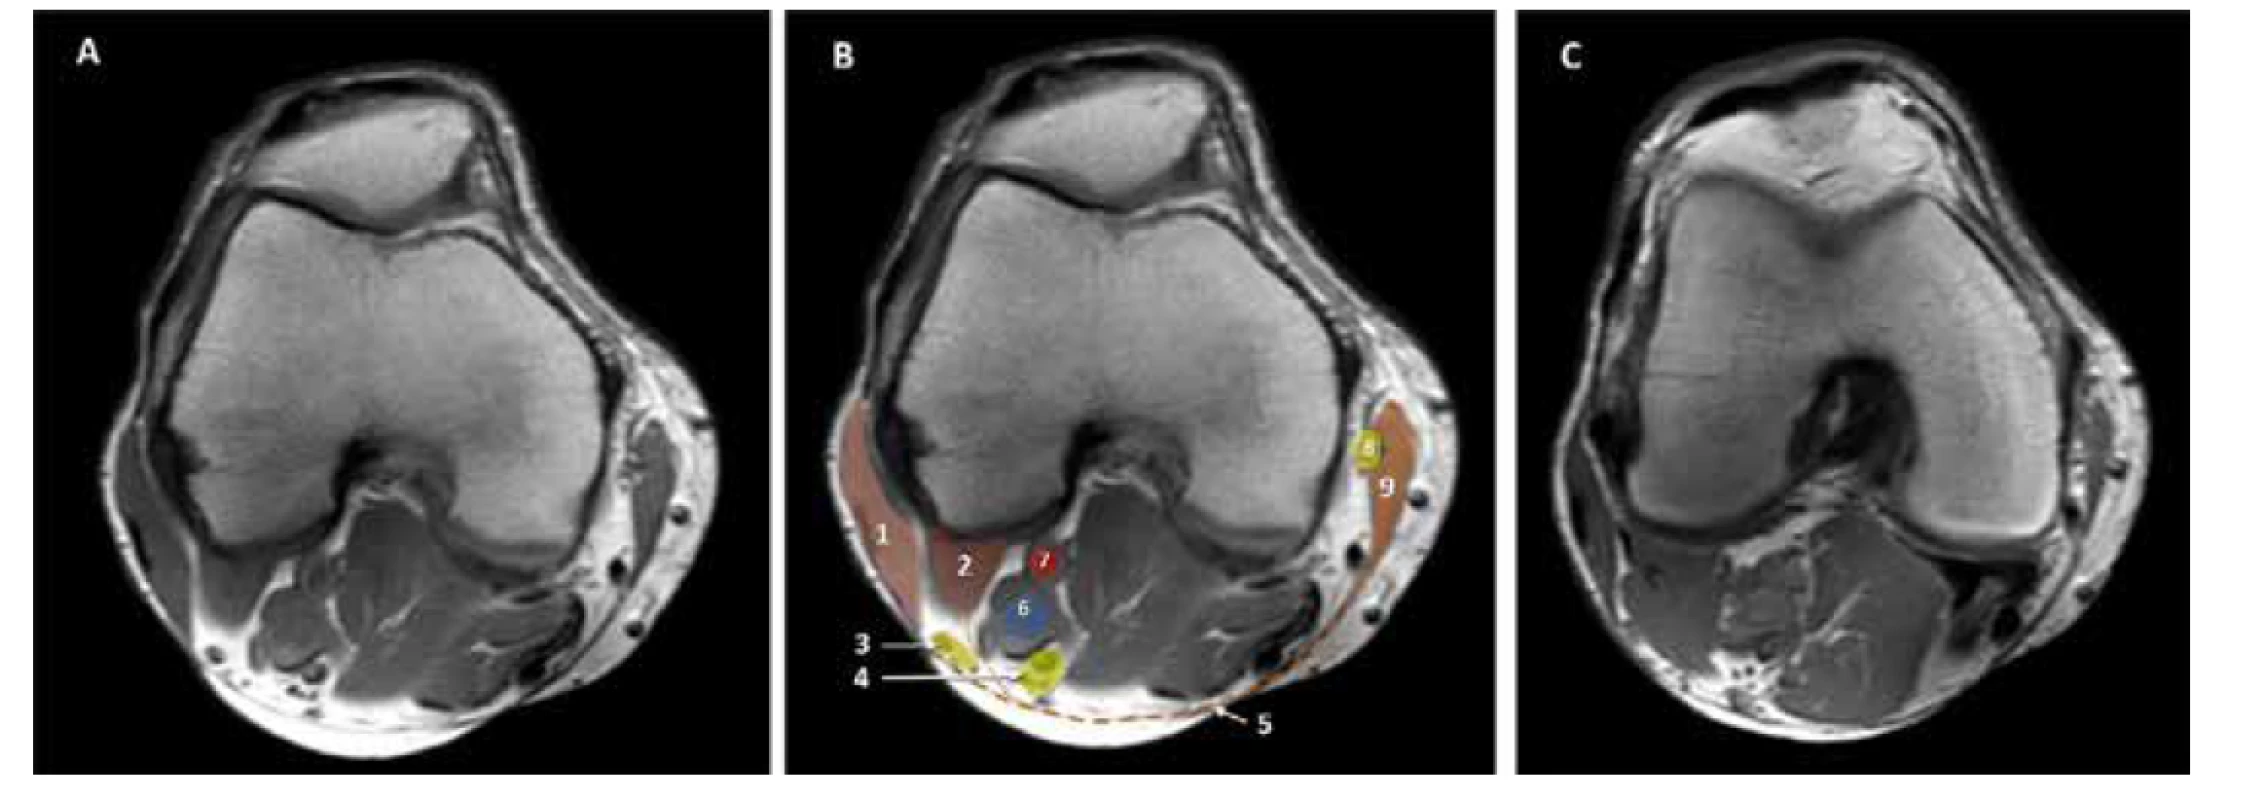 MRI kolena. A. nativní obraz. B. kolorovaný obraz: 1. m. biceps femoris, 2. zevní hlava m. gastrocnemius, 3. nervus peroneus communis, 4. n. tibialis,
5. hluboká fascie, 6. vena poplitea, 7. arterie poplitea. 8. n saphenus, 9. m sartorius. C. nativní obraz: horizontální řez 3 mm distálněji než A a B. Zevní hlava
m. gastrocnemius je mohutnější a zcela odděluje n. tibialis od n. peroneus